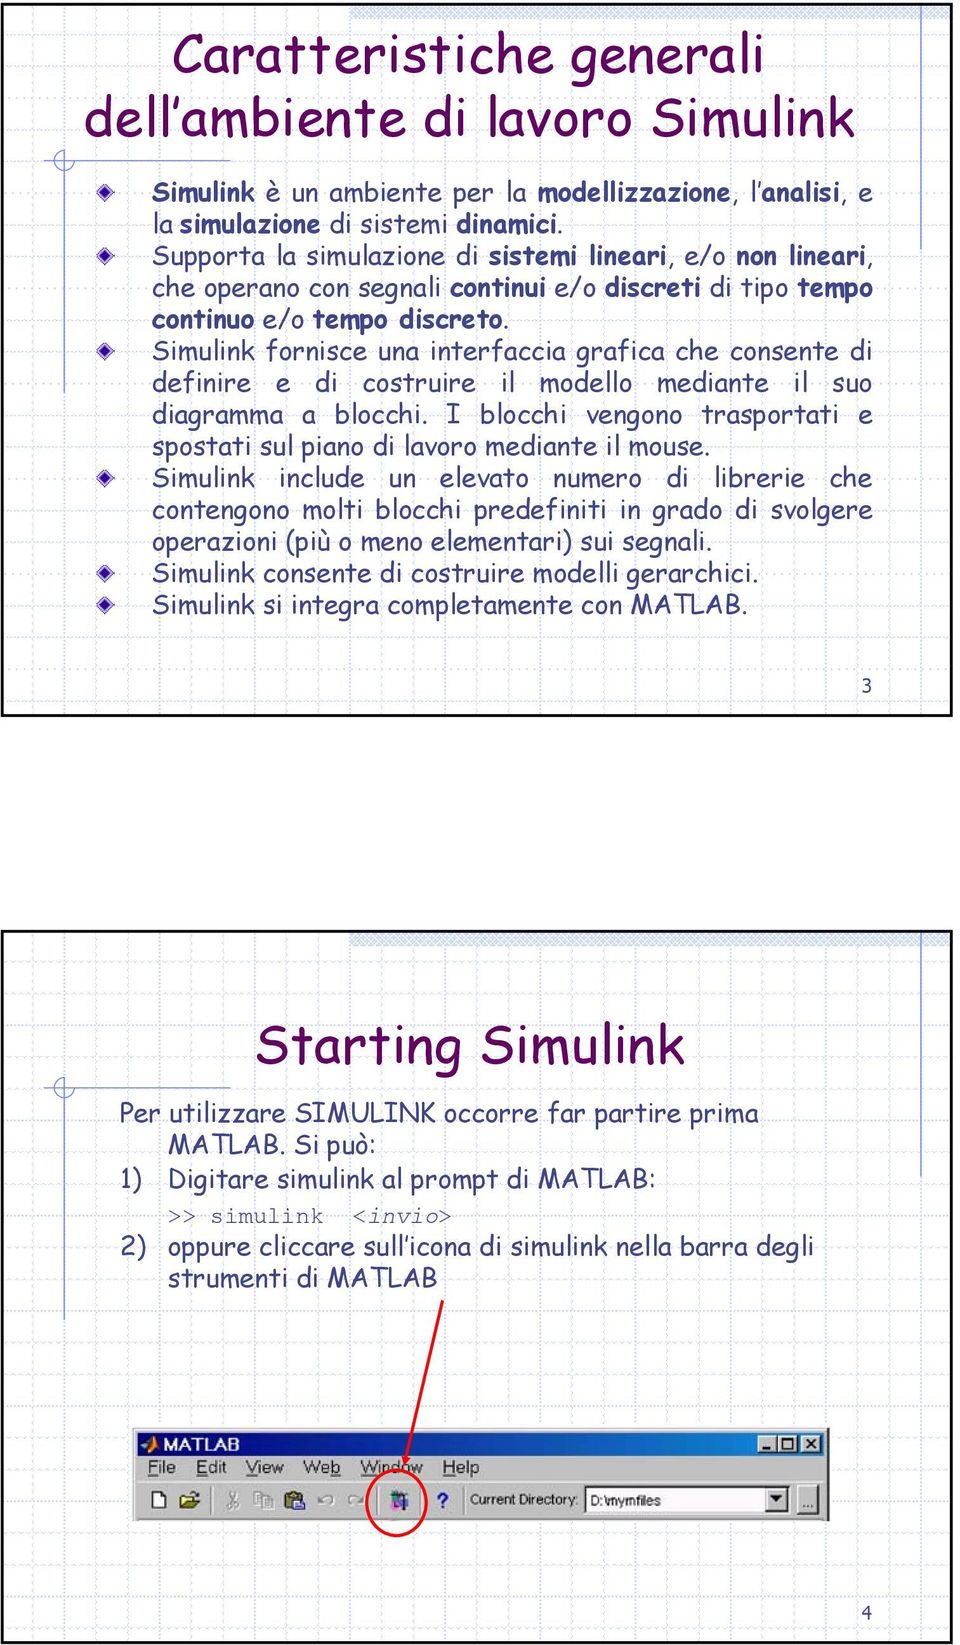 Simulink fornisce una interfaccia grafica che consente di definire e di costruire il modello mediante il suo diagramma a blocchi.